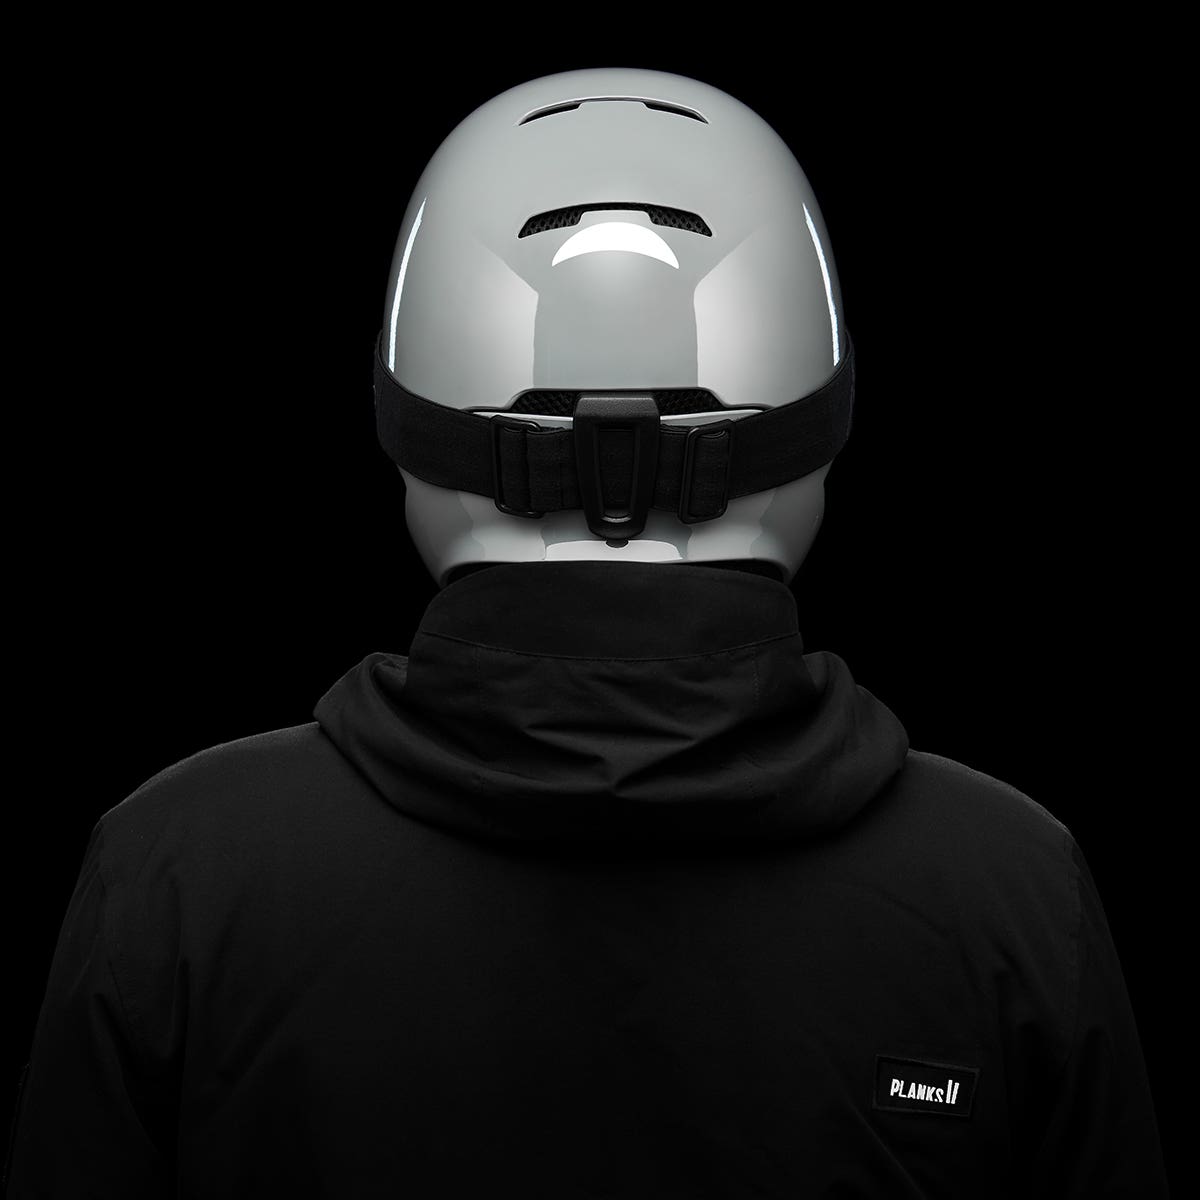 RG1-DX Helmet - Prime 21/22